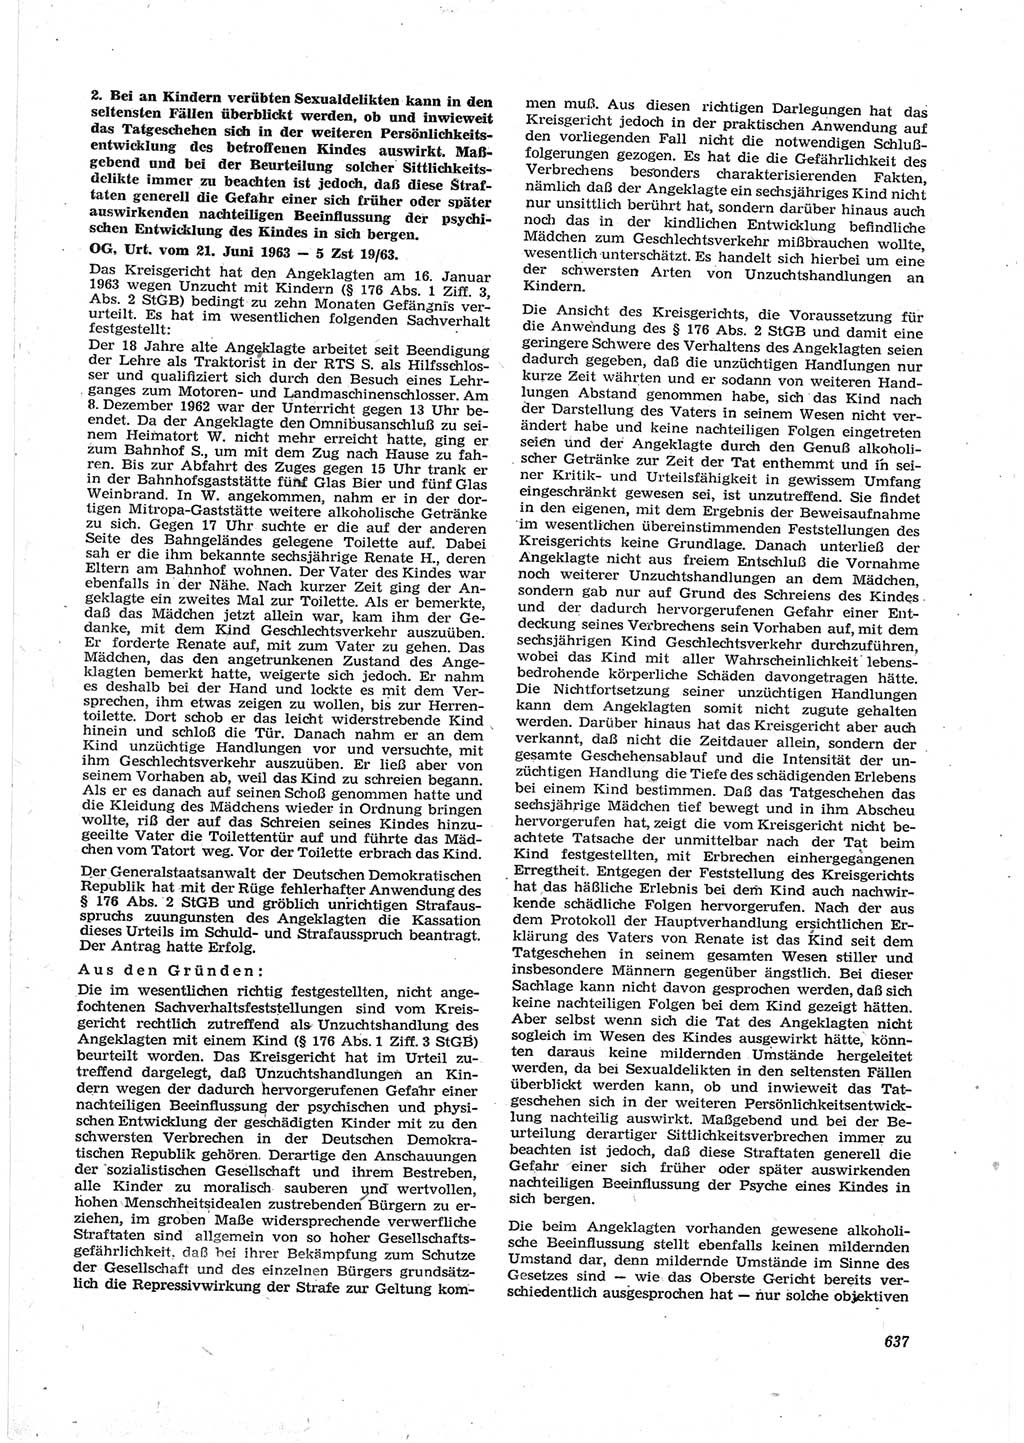 Neue Justiz (NJ), Zeitschrift für Recht und Rechtswissenschaft [Deutsche Demokratische Republik (DDR)], 17. Jahrgang 1963, Seite 637 (NJ DDR 1963, S. 637)